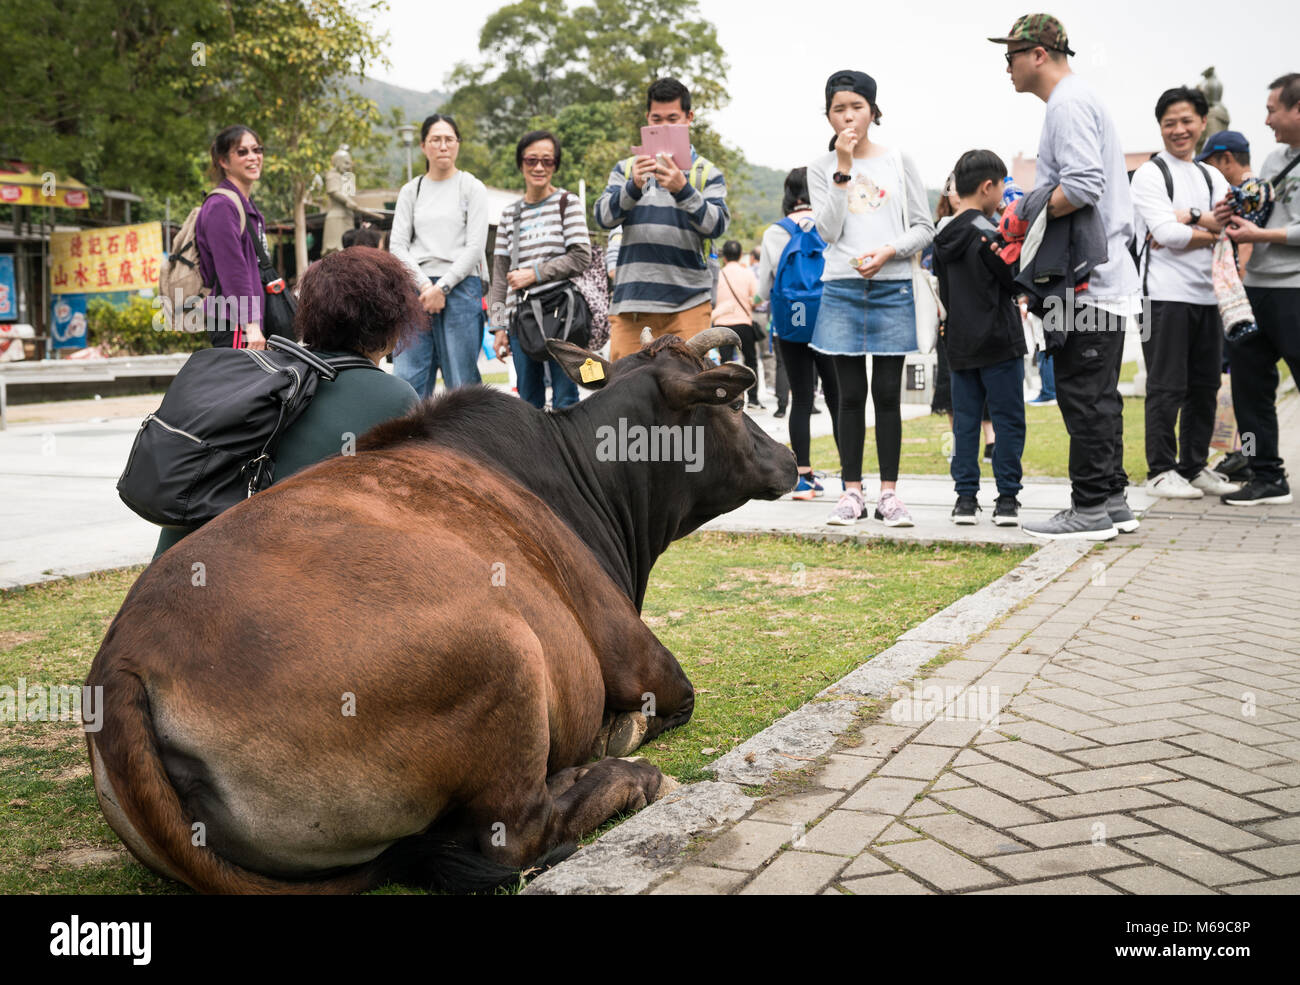 19 February 2018 - Ngong Ping, Lantau Island, Hong Kong. People taking photographs of a cow at Po Lin monastery. Stock Photo